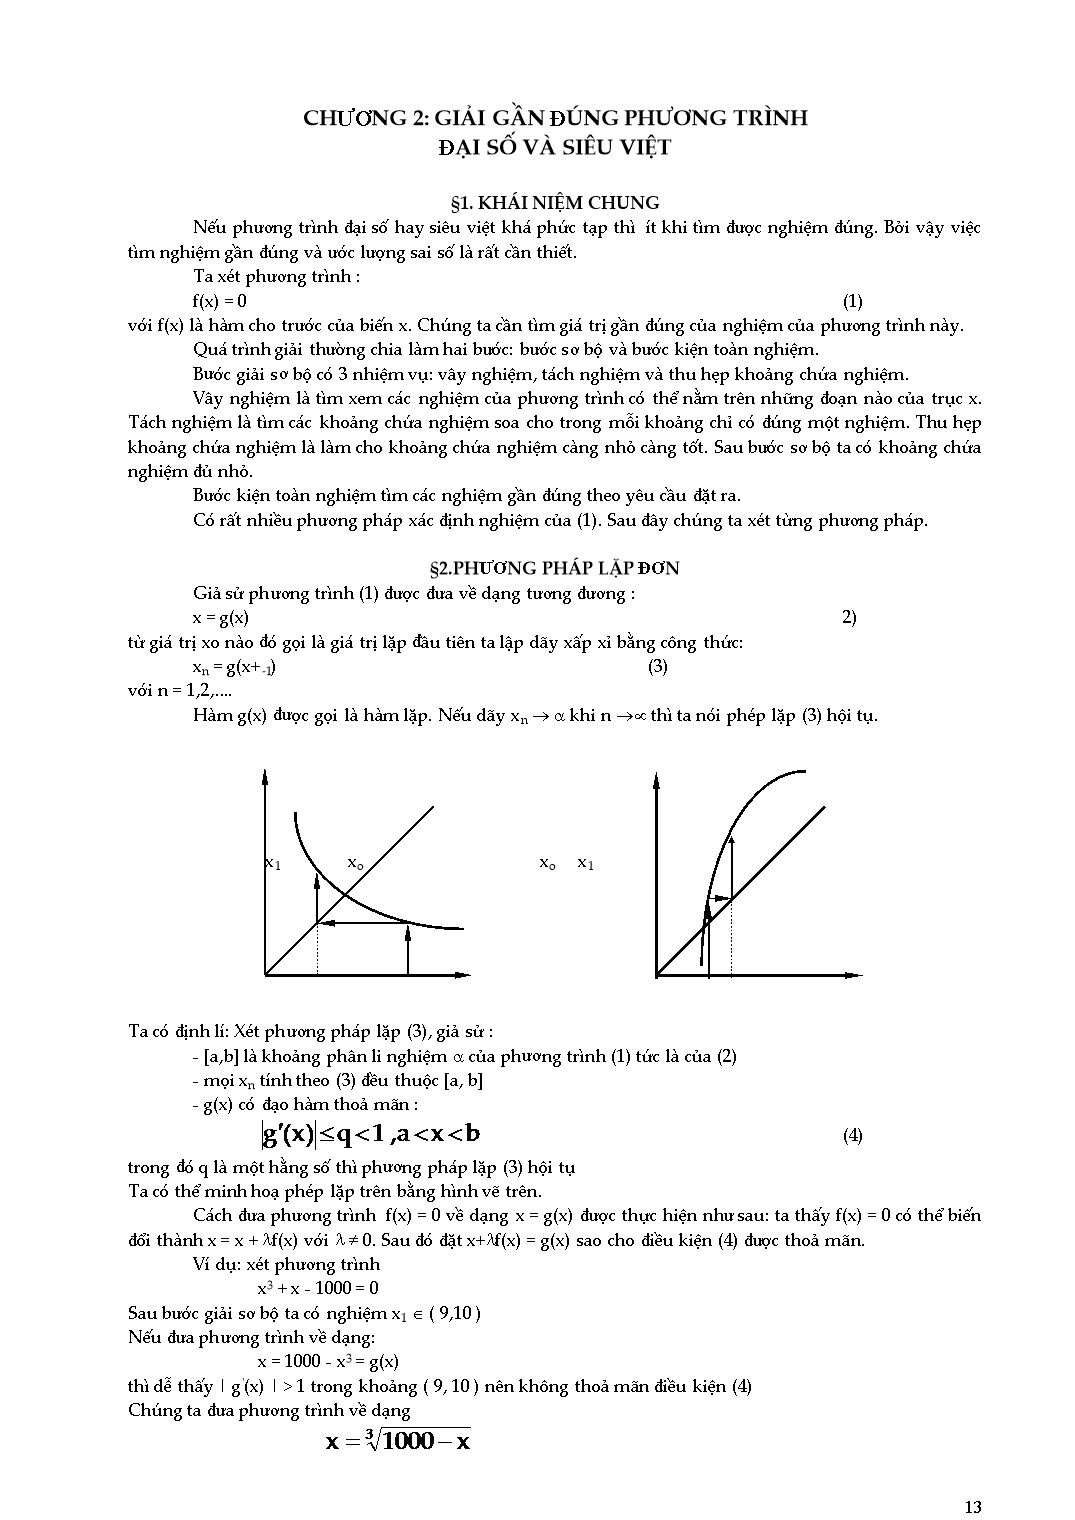 Giáo trình Phương pháp tính - Chương 2: Giải gần đúng phương trình đại số và siêu việt trang 1